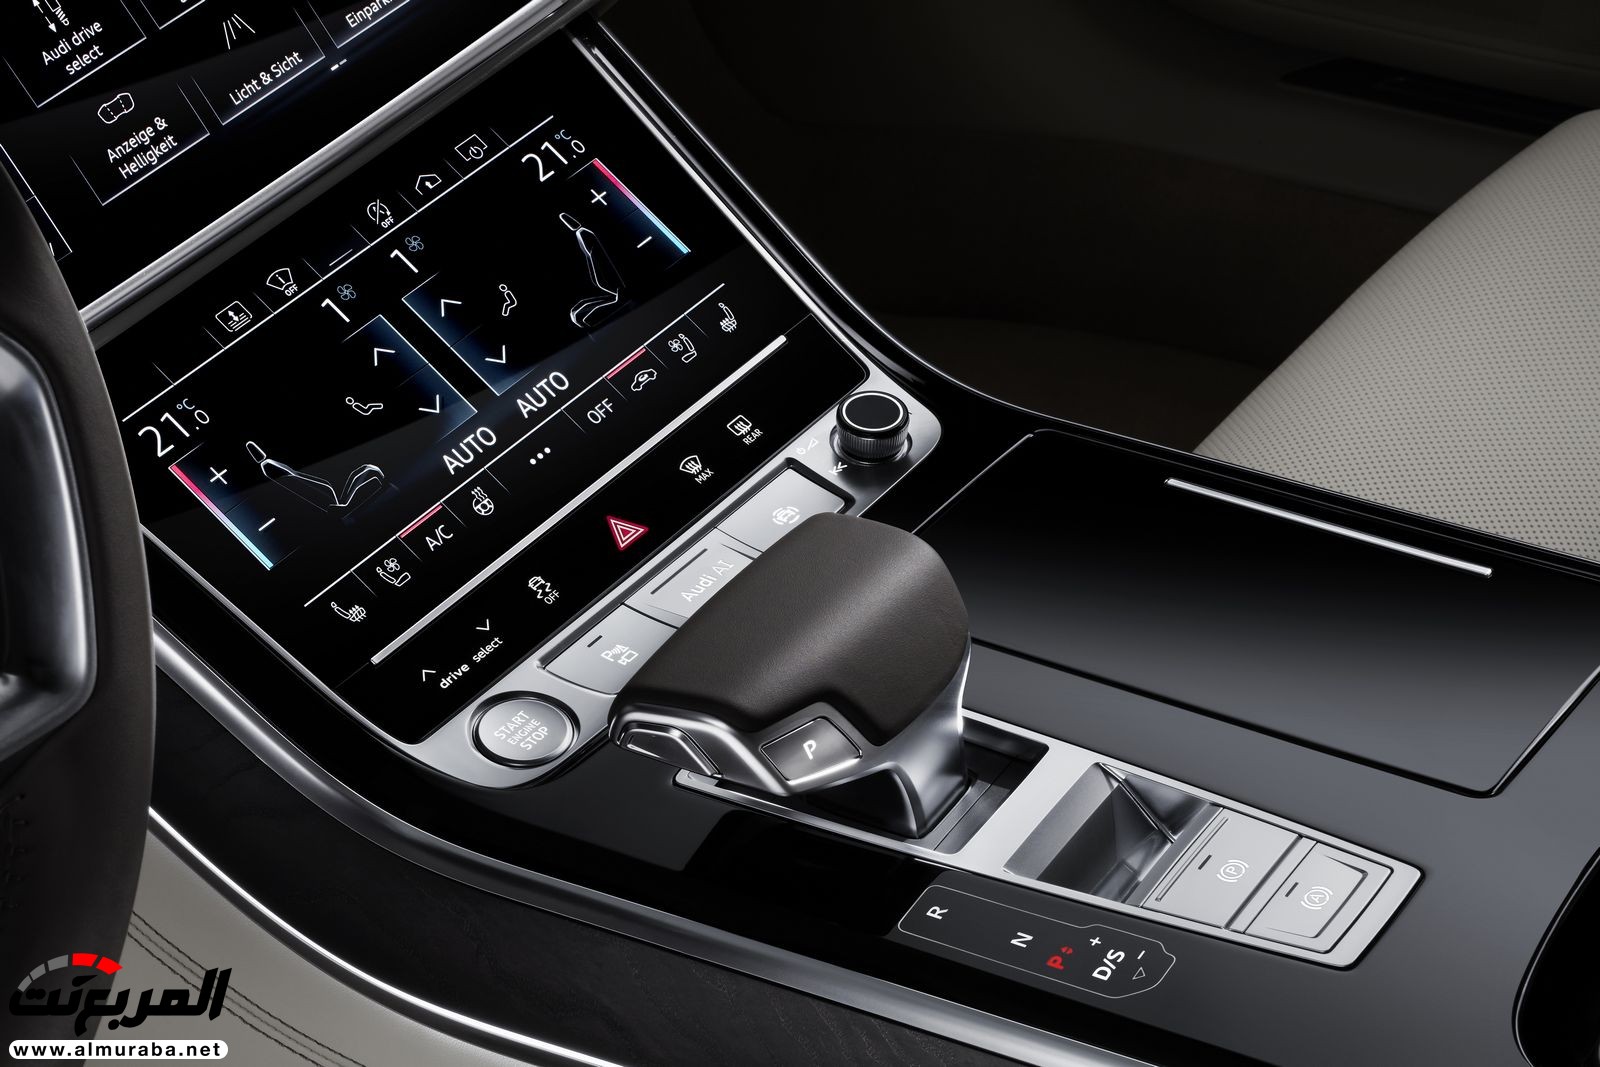 أودي A8 2018 الجديدة كلياً تكشف نفسها بتصميم وتقنيات متطورة "معلومات + 100 صورة" Audi A8 38